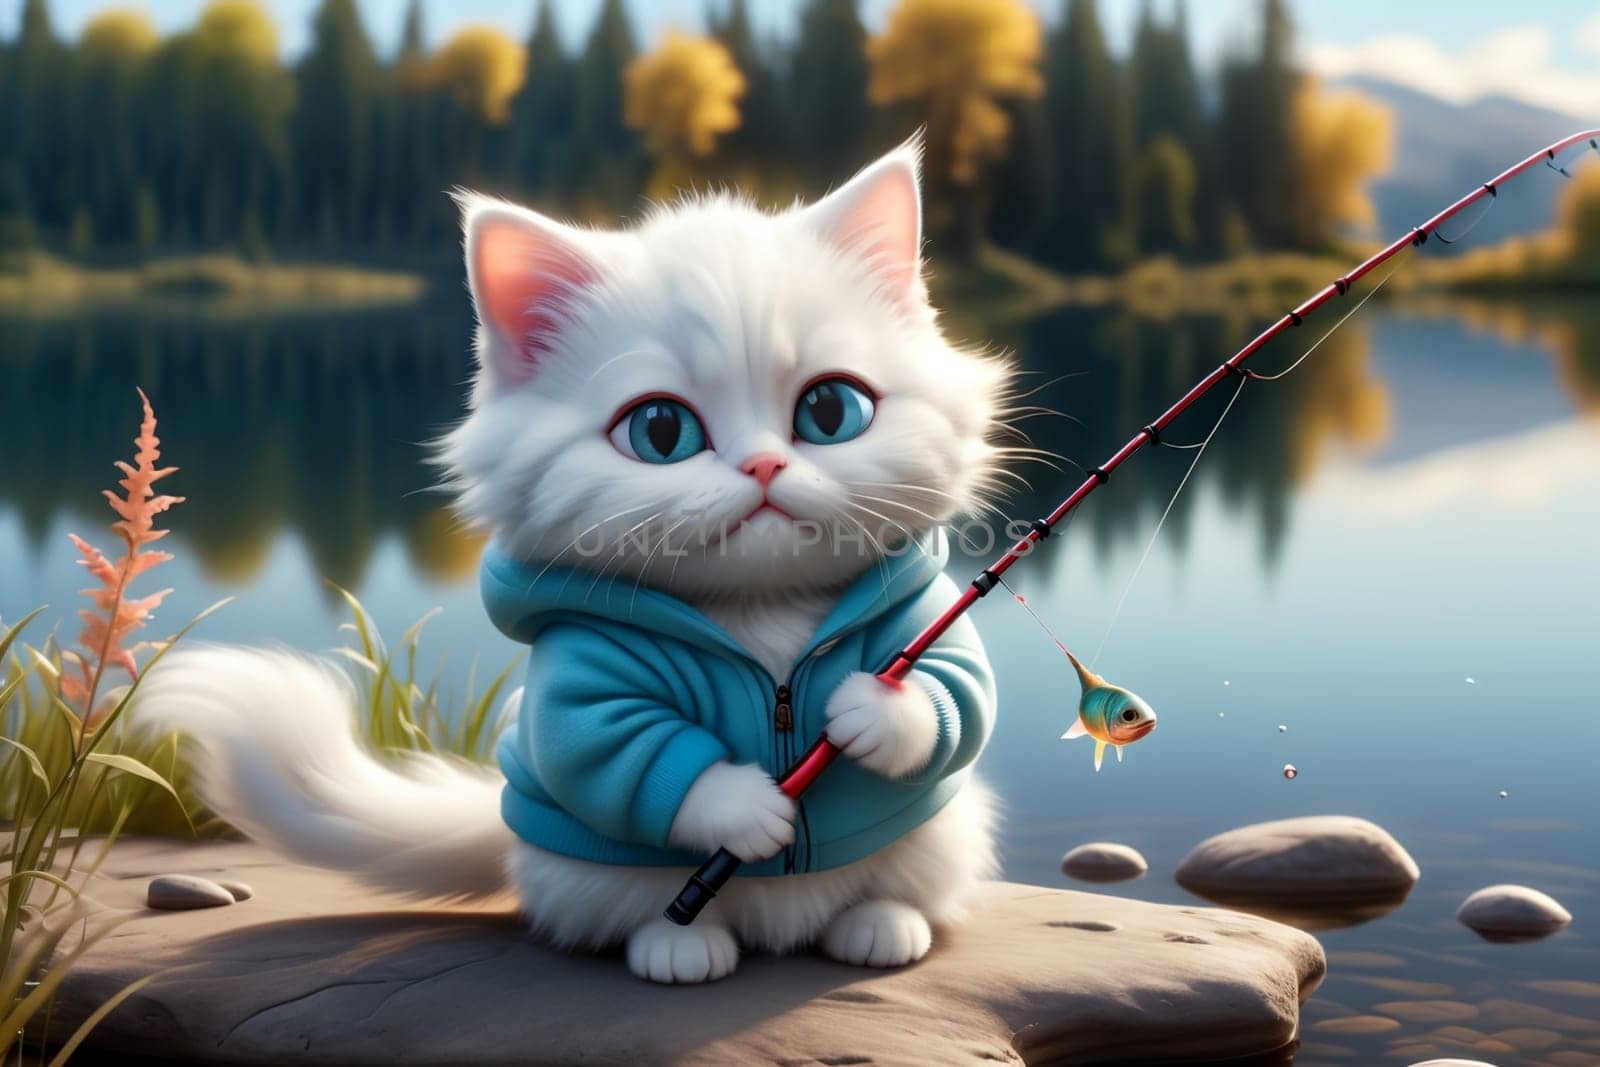 cat catches fish on a beautiful lake by Rawlik